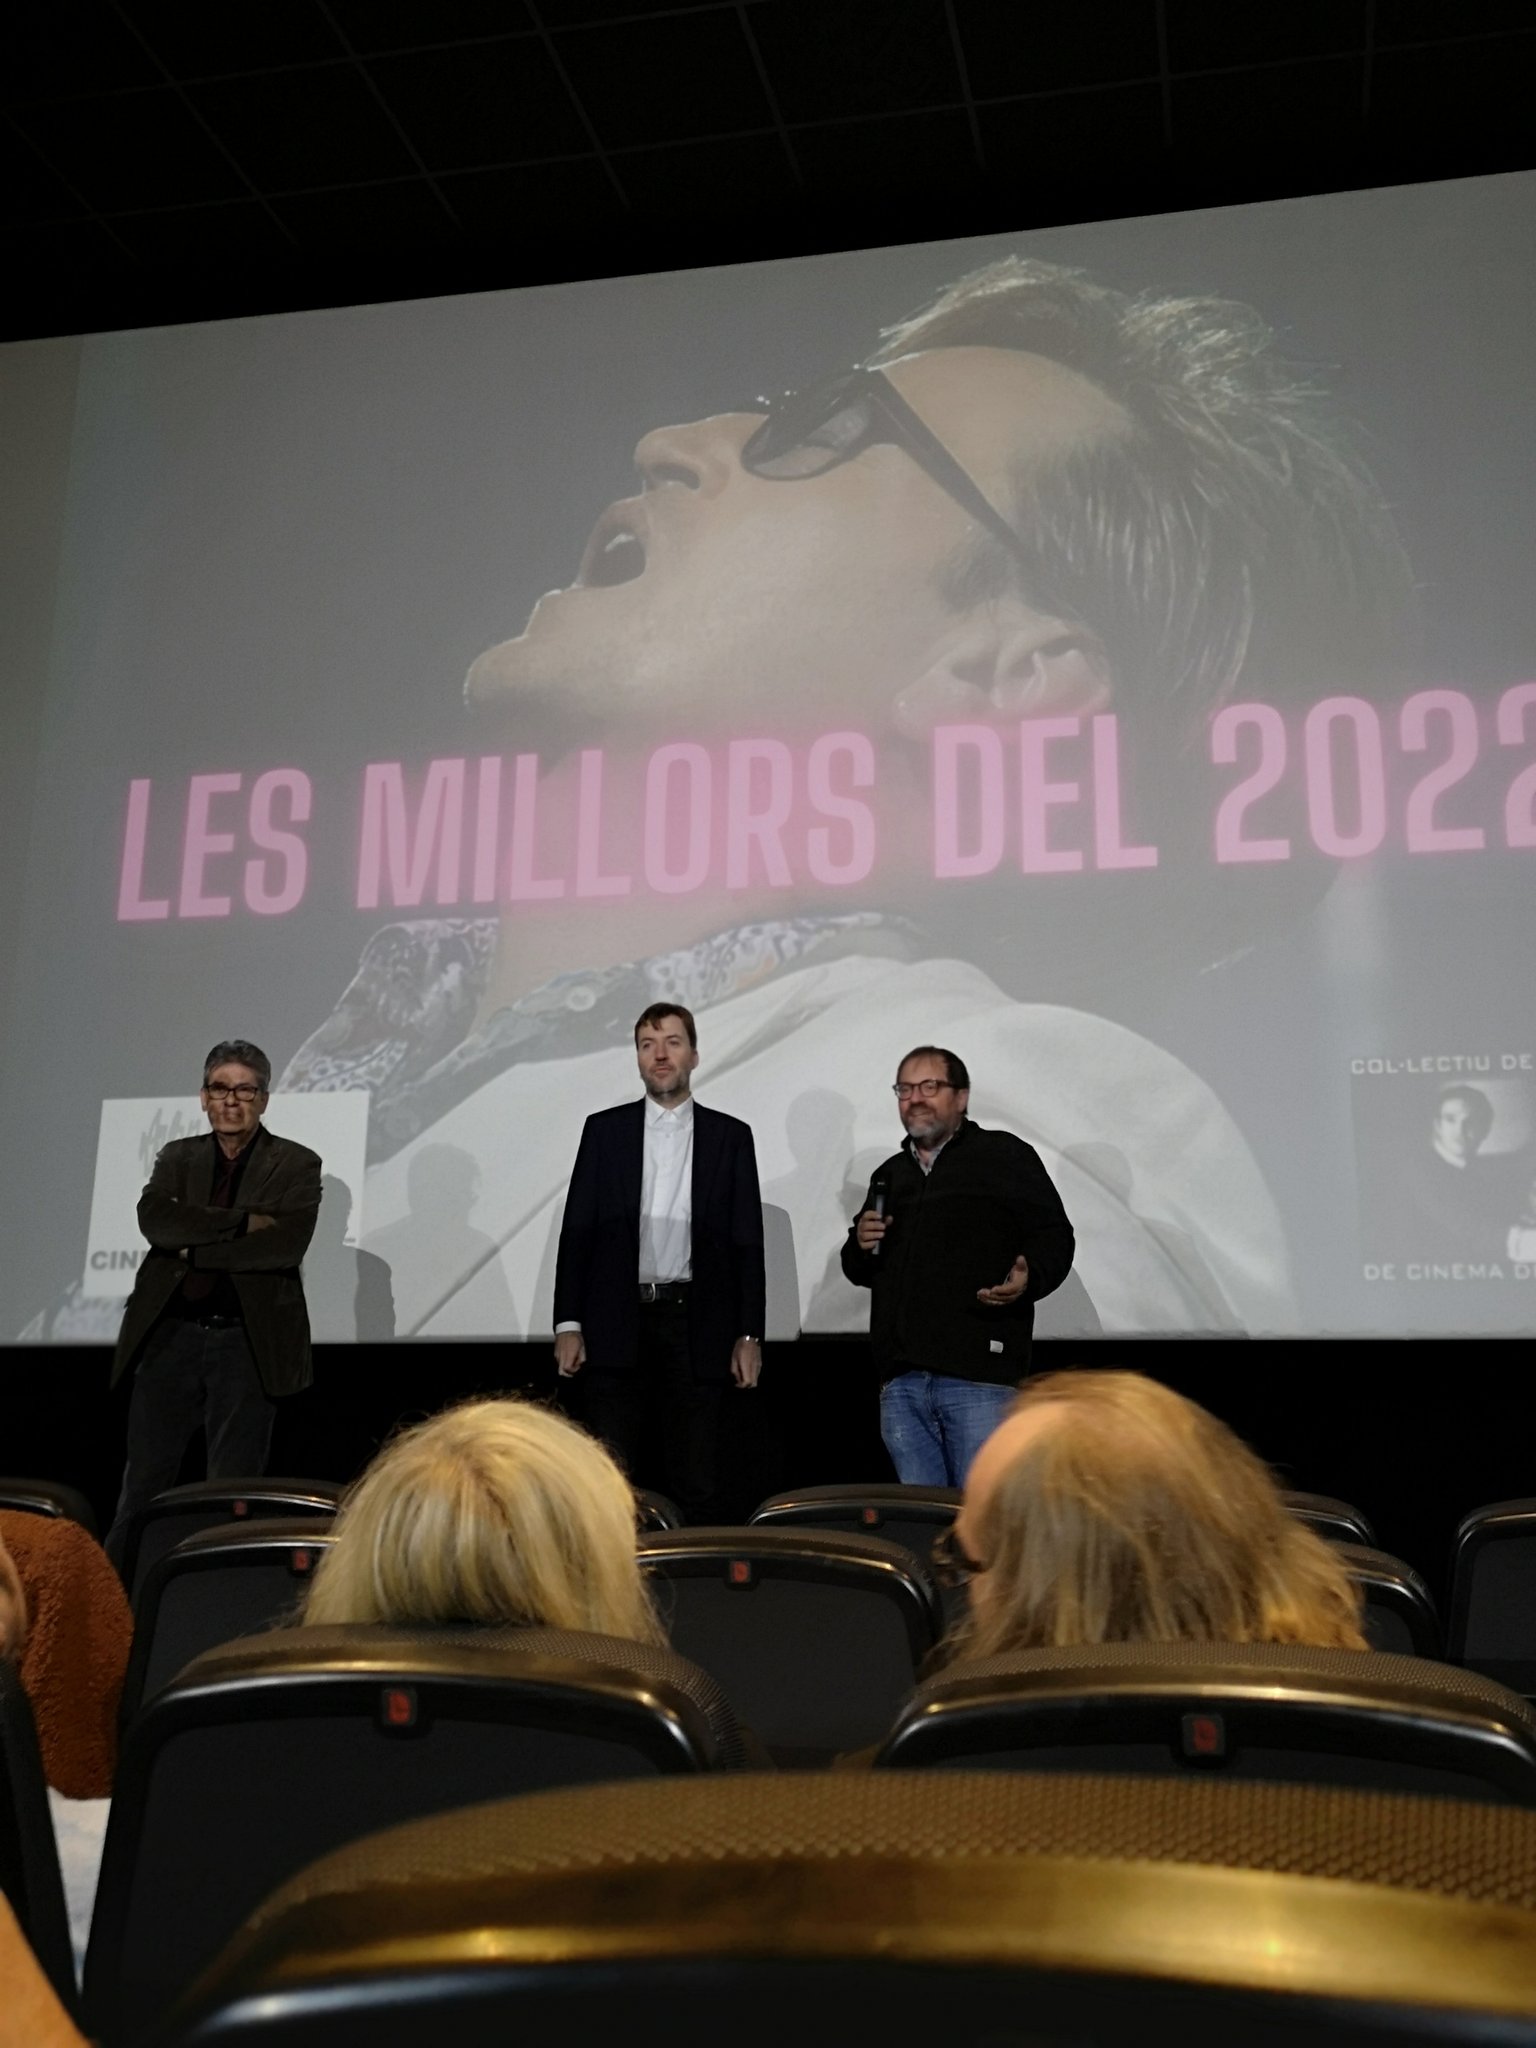 “Pacifiction” d\'Albert Serra, millor pel·lícula del 2022 segons la crítica gironina